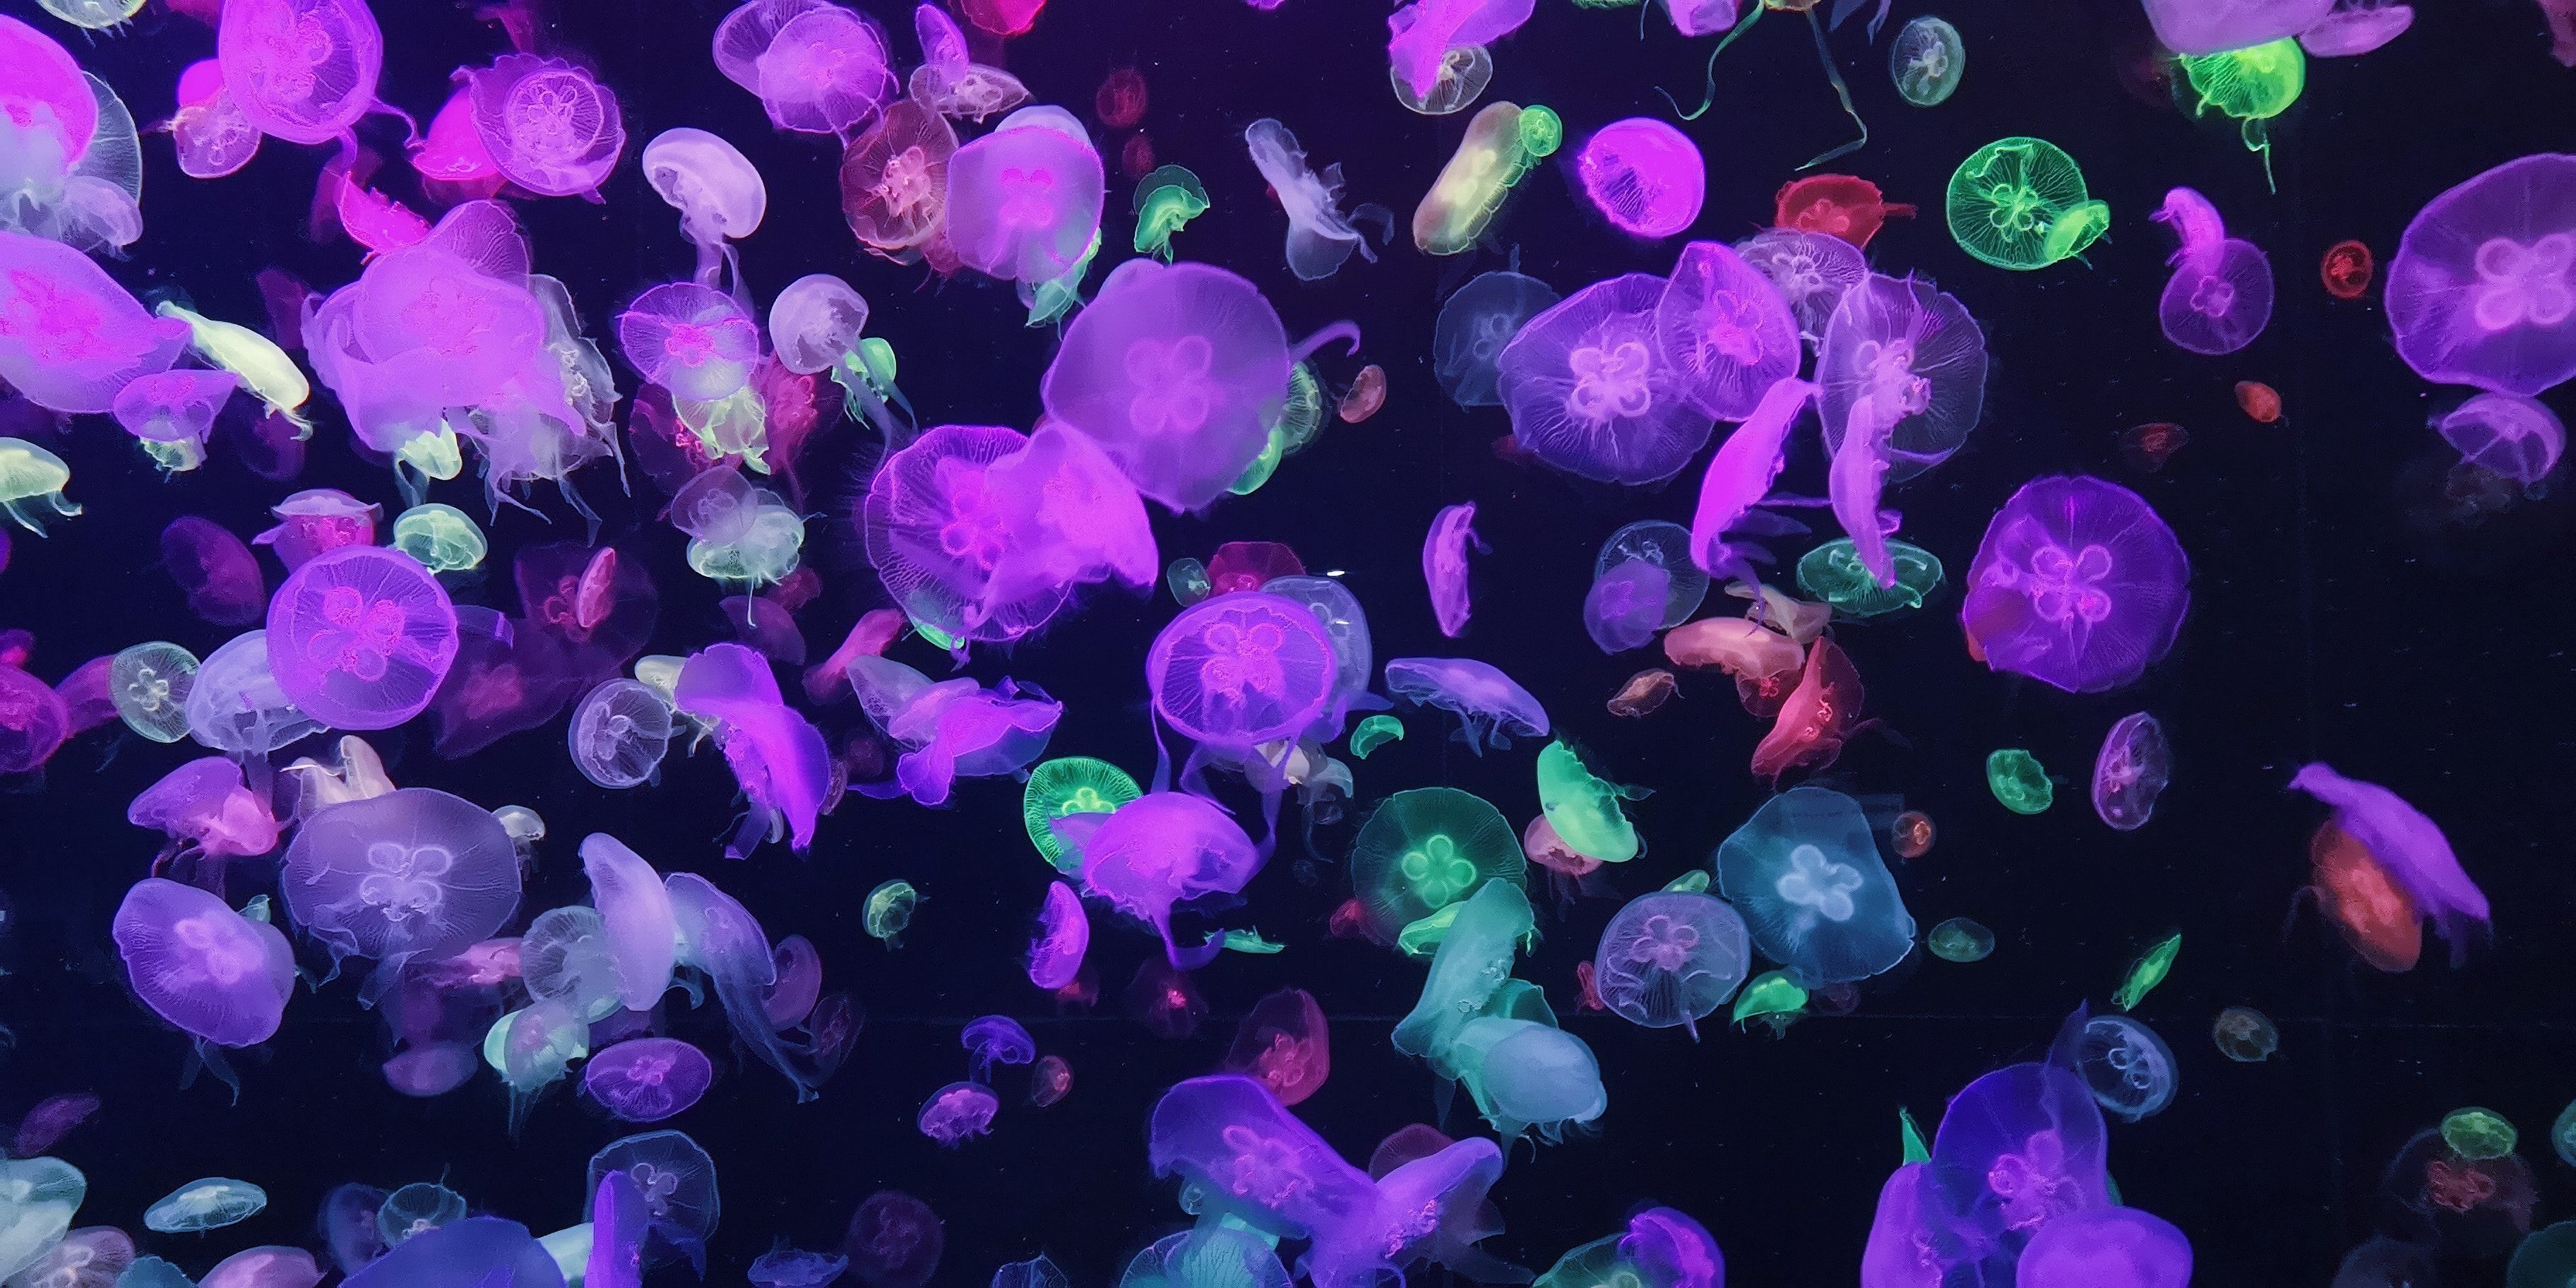 Українські туристи скаржаться на інтоксикацію: до чого тут медузи в Азовському морі - Україна новини - Новини Здоров’я